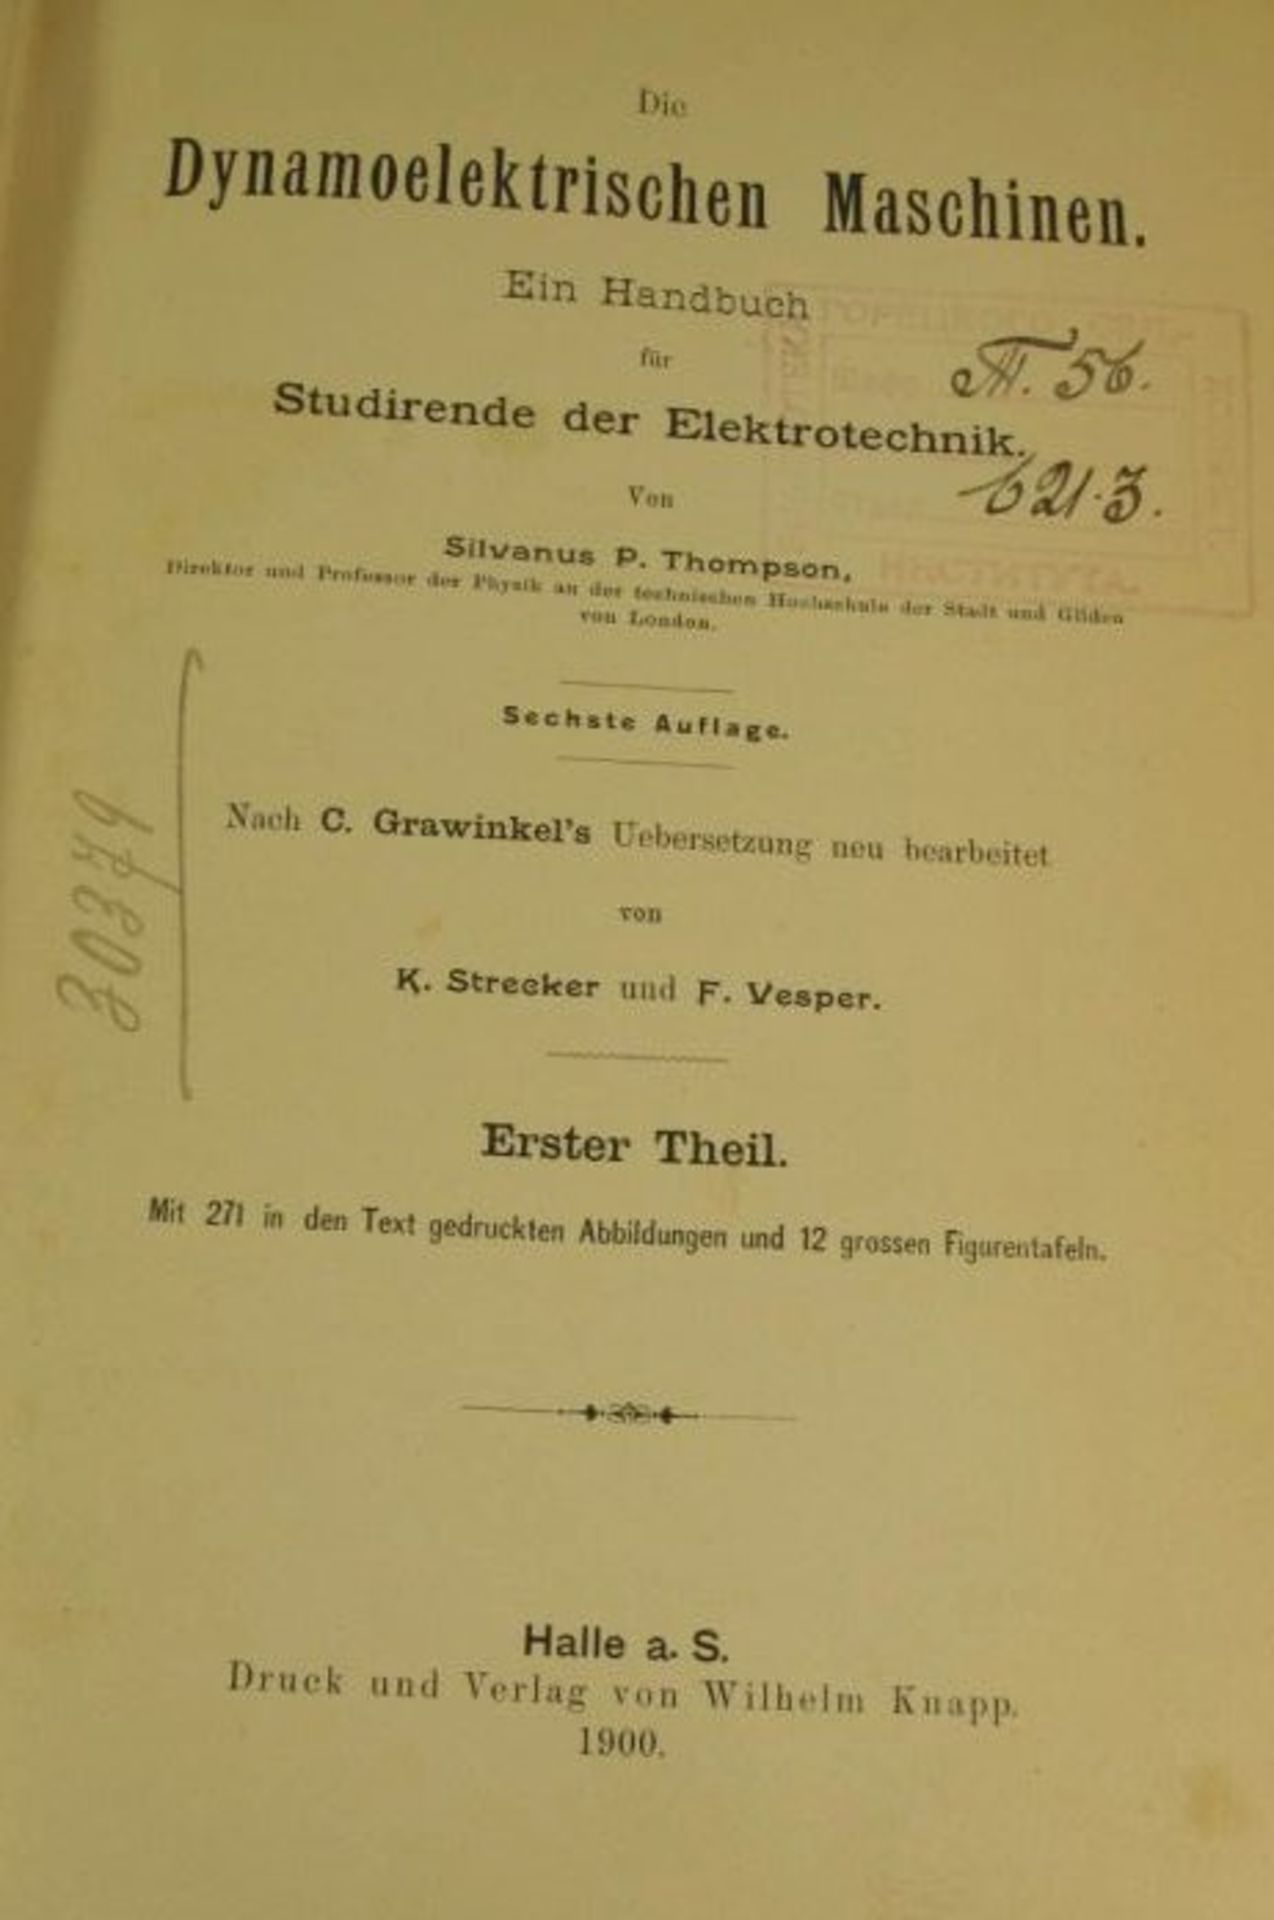 Die Dynamoelektrischen Maschinen, Teil 1, Halle a.d.S. 1900, Alters-u. Gebrauchsspuren. - Bild 2 aus 2